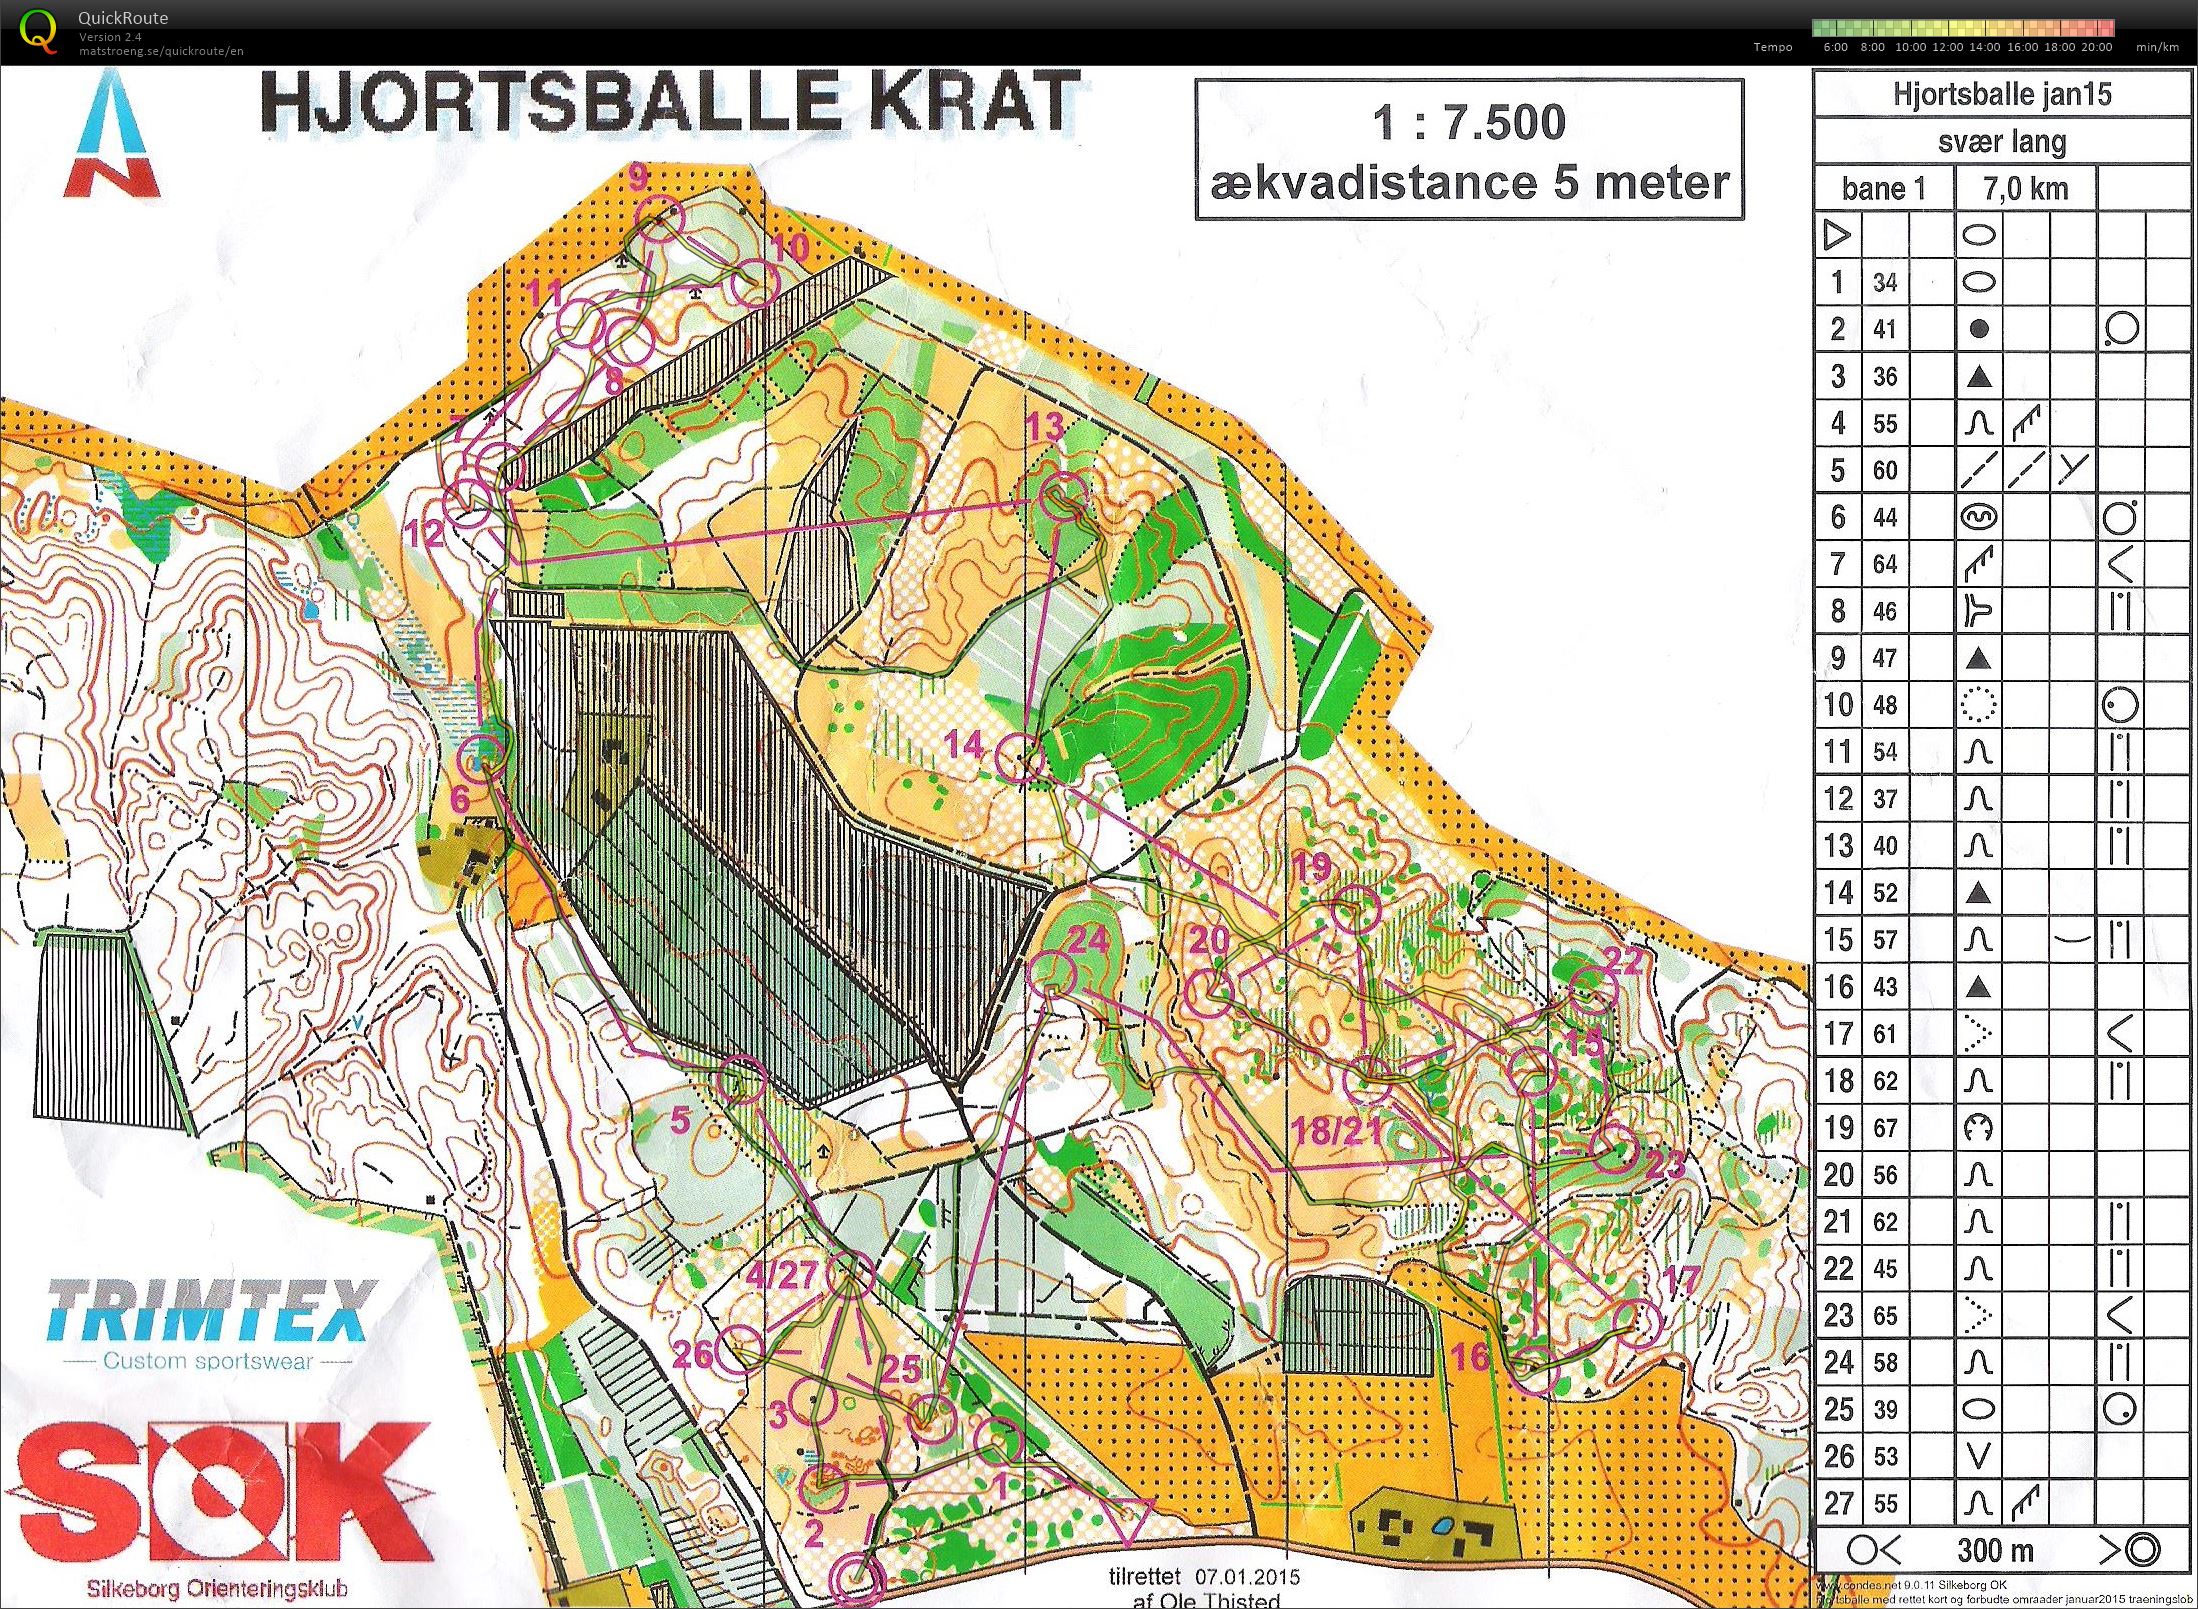 Hjortsballe Krat - Bane 1 - 7 km. (31/01/2015)